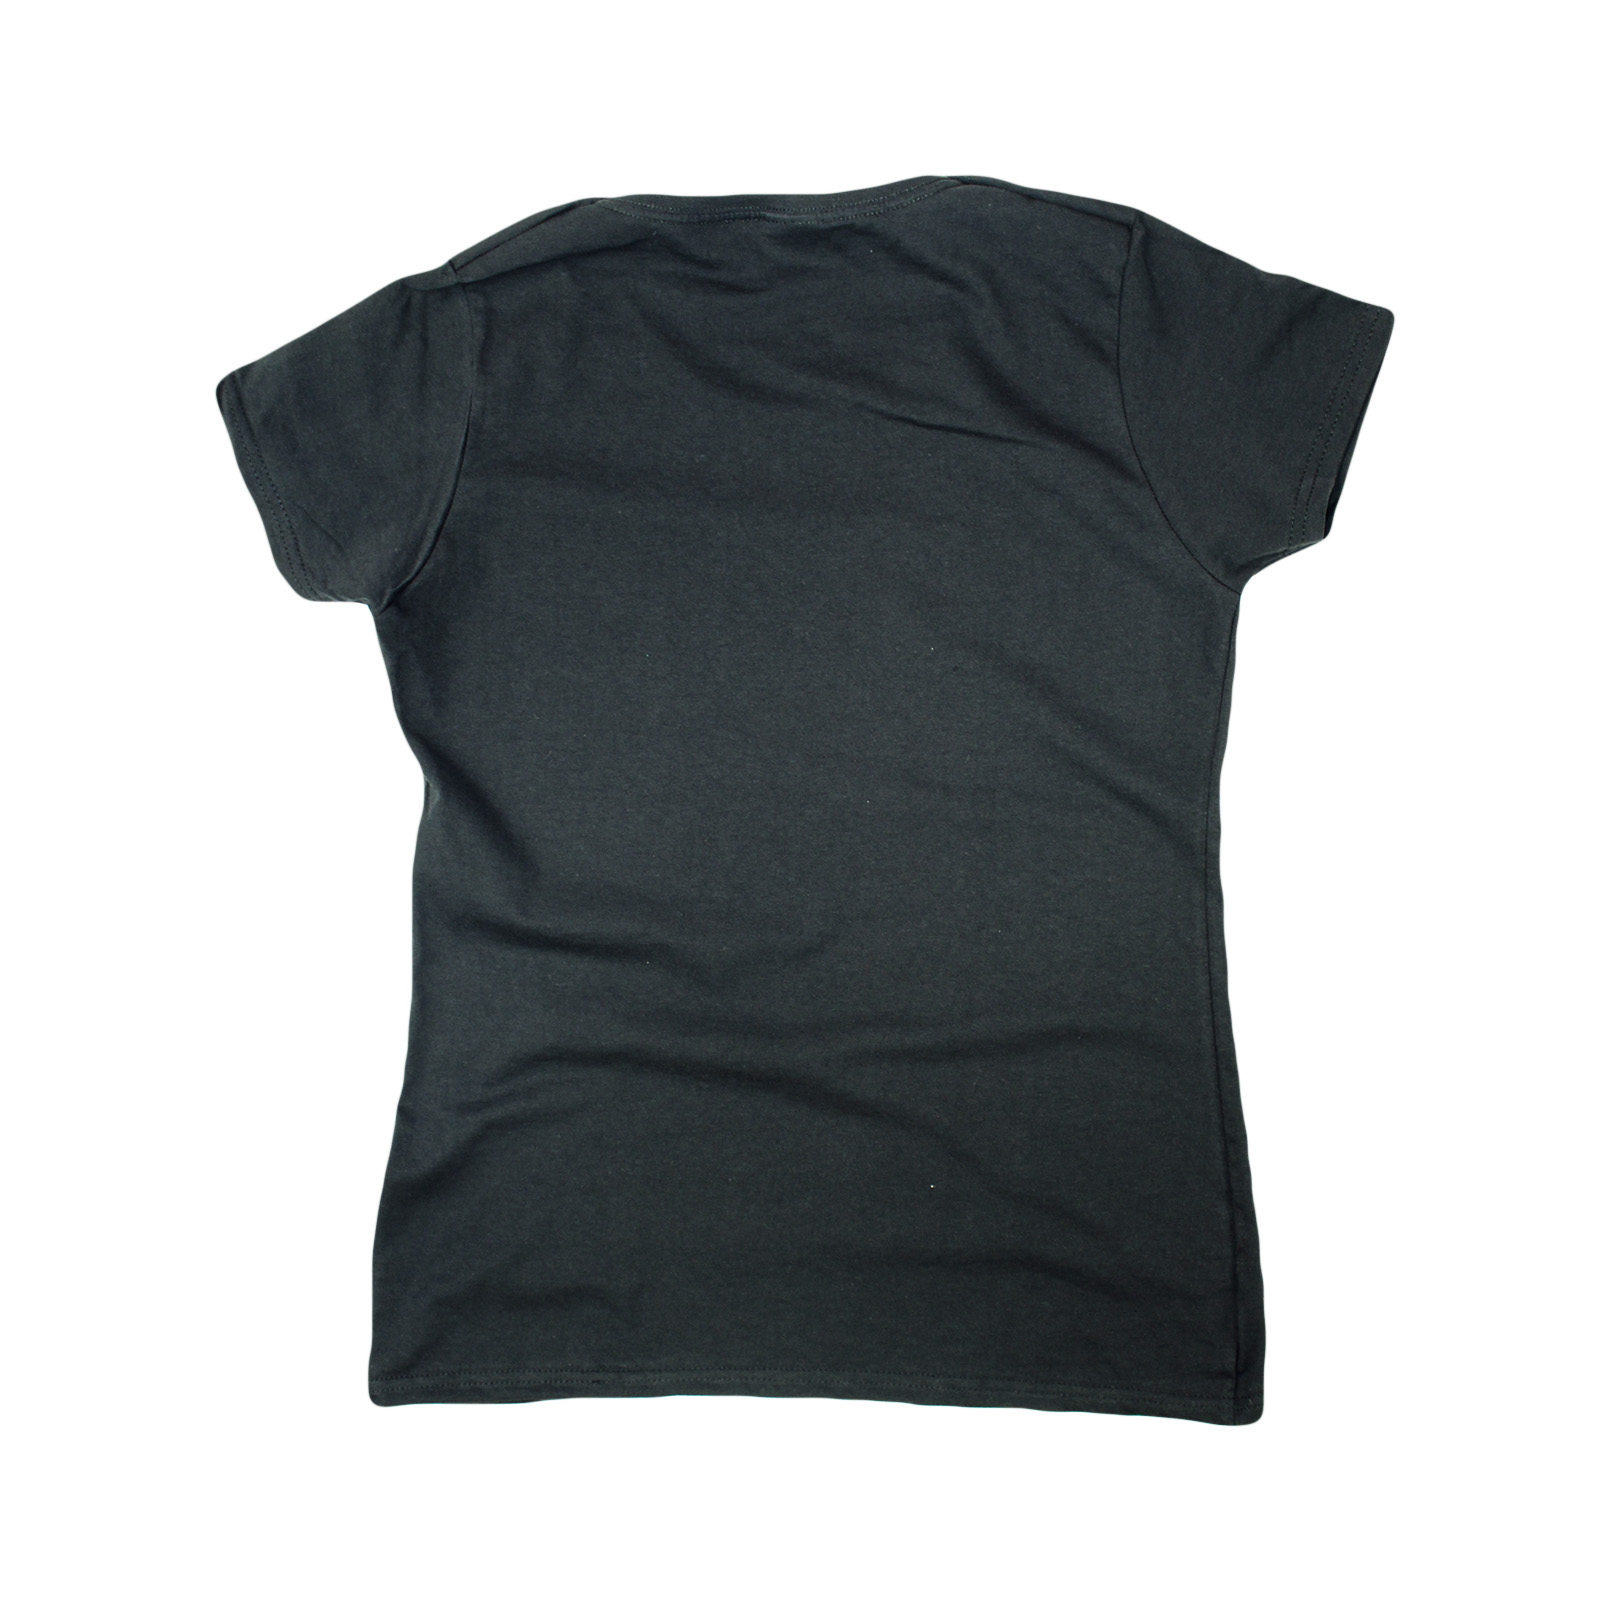 Drôle Nouveauté Tops T-shirt femme tee tshirt-seins me font sourire